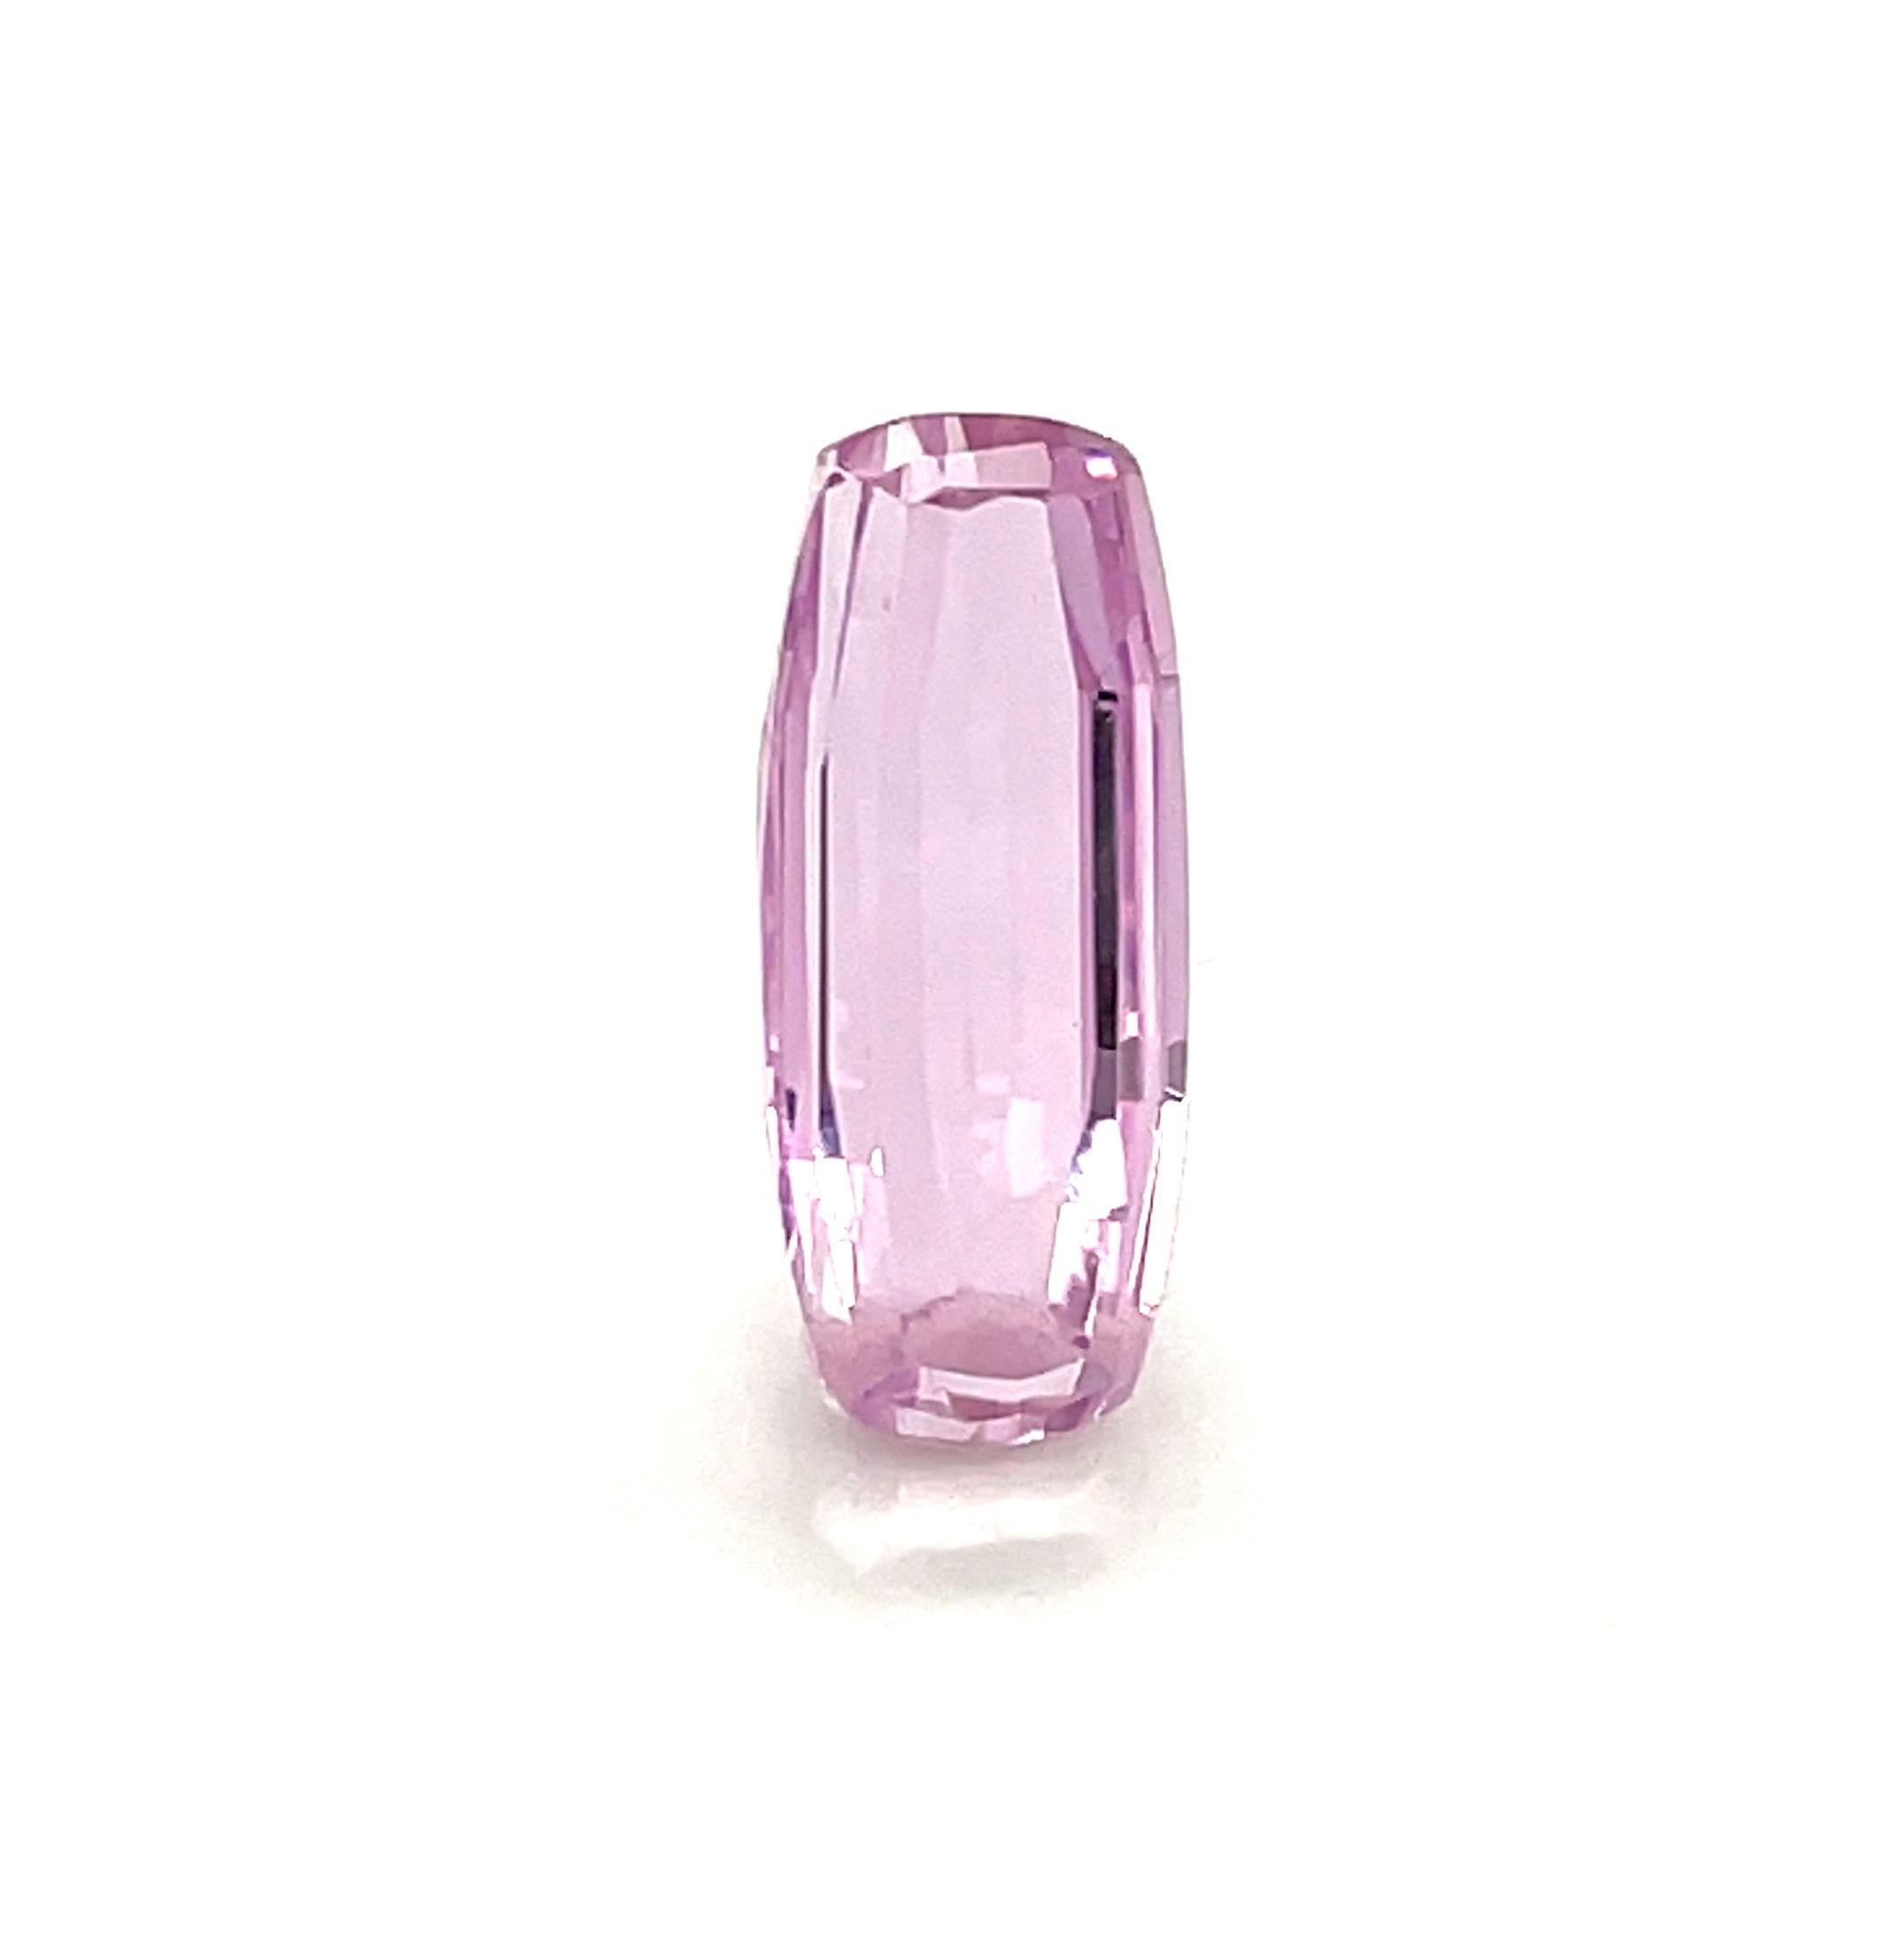 Artisan 10.17 Carat Pink Kunzite, Modified Elongated Cushion, Unset Loose Gemstone